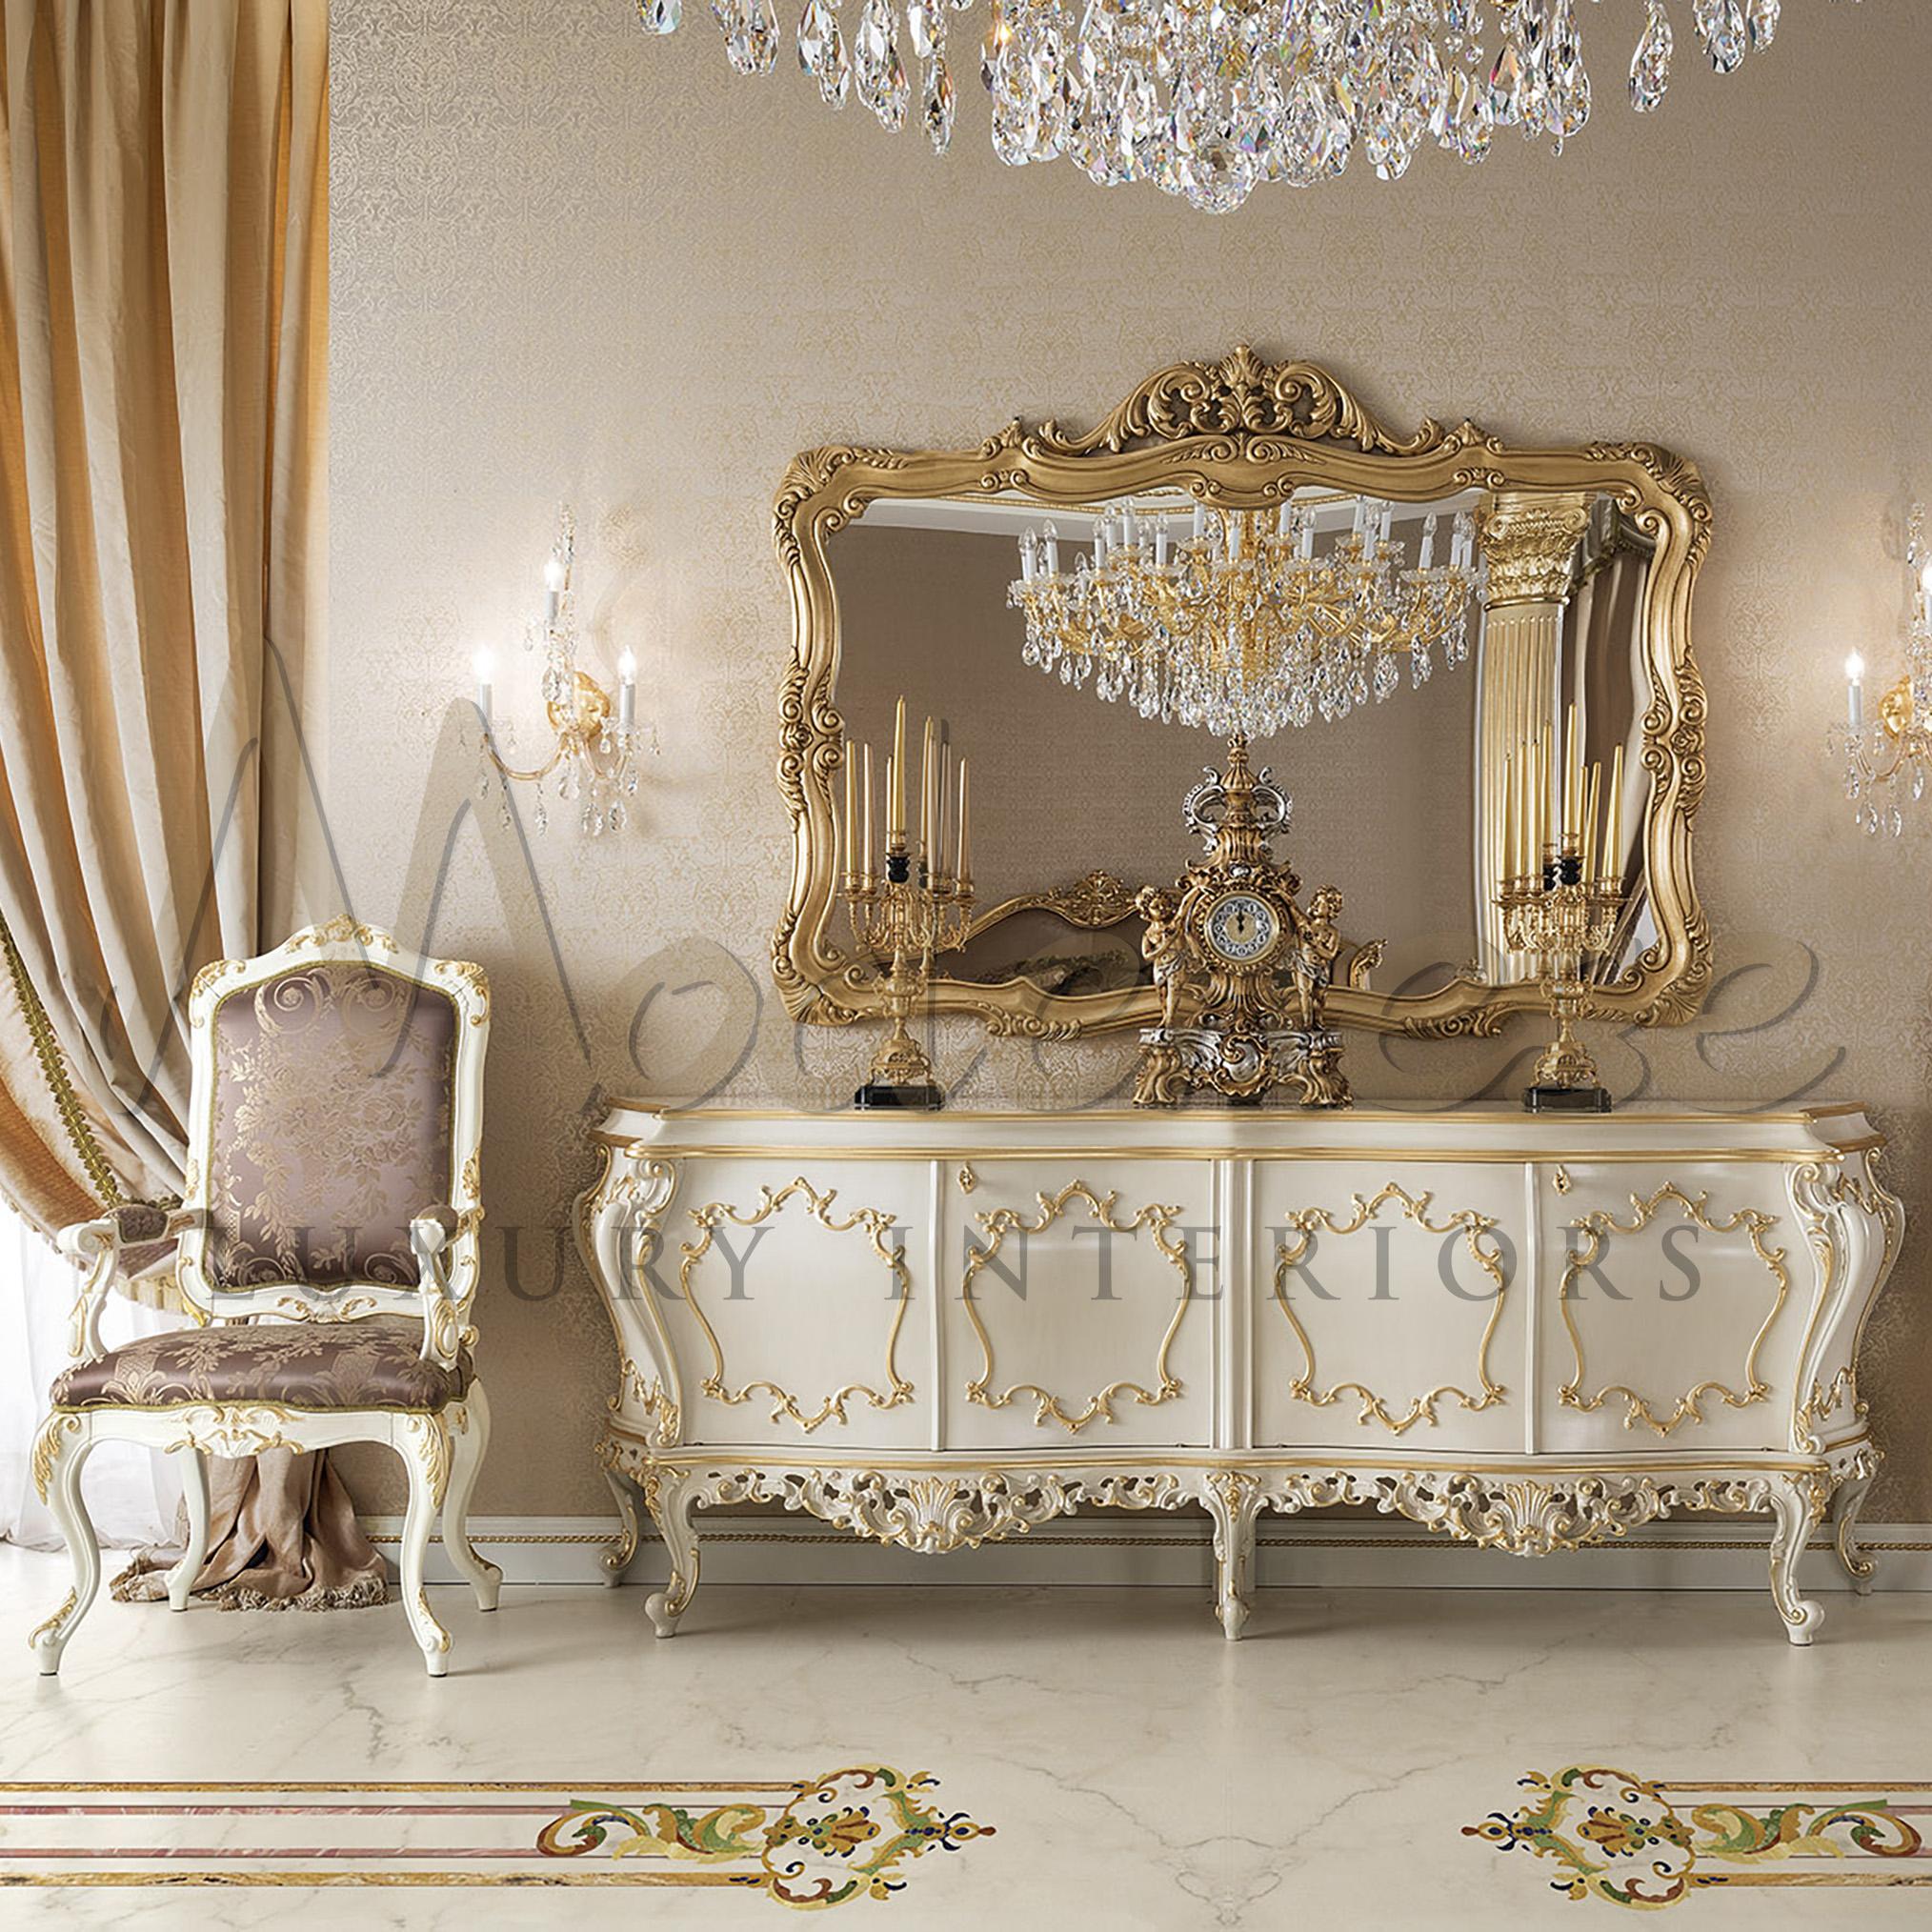 Majestic Esszimmerstuhl mit Armlehne von Modenese Gastone mit geschwungenen Barockbeinen und edler Polsterung. Hochwertiger lilafarbener Satinstoff mit Blattmuster und Blattgoldapplikationen auf reinem Weiß, der ein Gefühl von Strenge, Kraft und